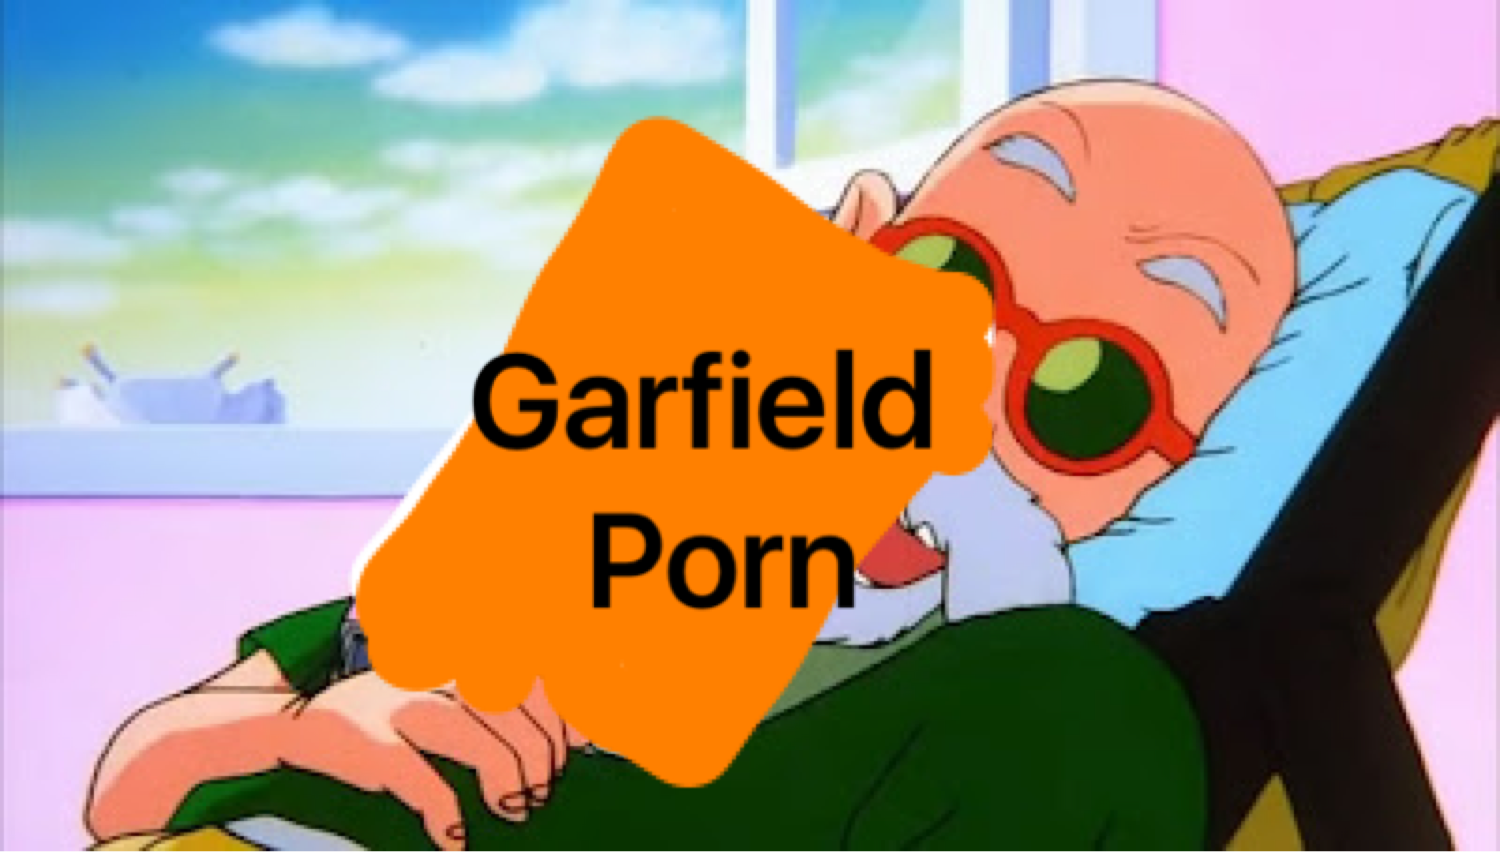 Cartoon Blowjob Pre - grafield porn - Garfield Porn comics, Cartoon porn comics ...